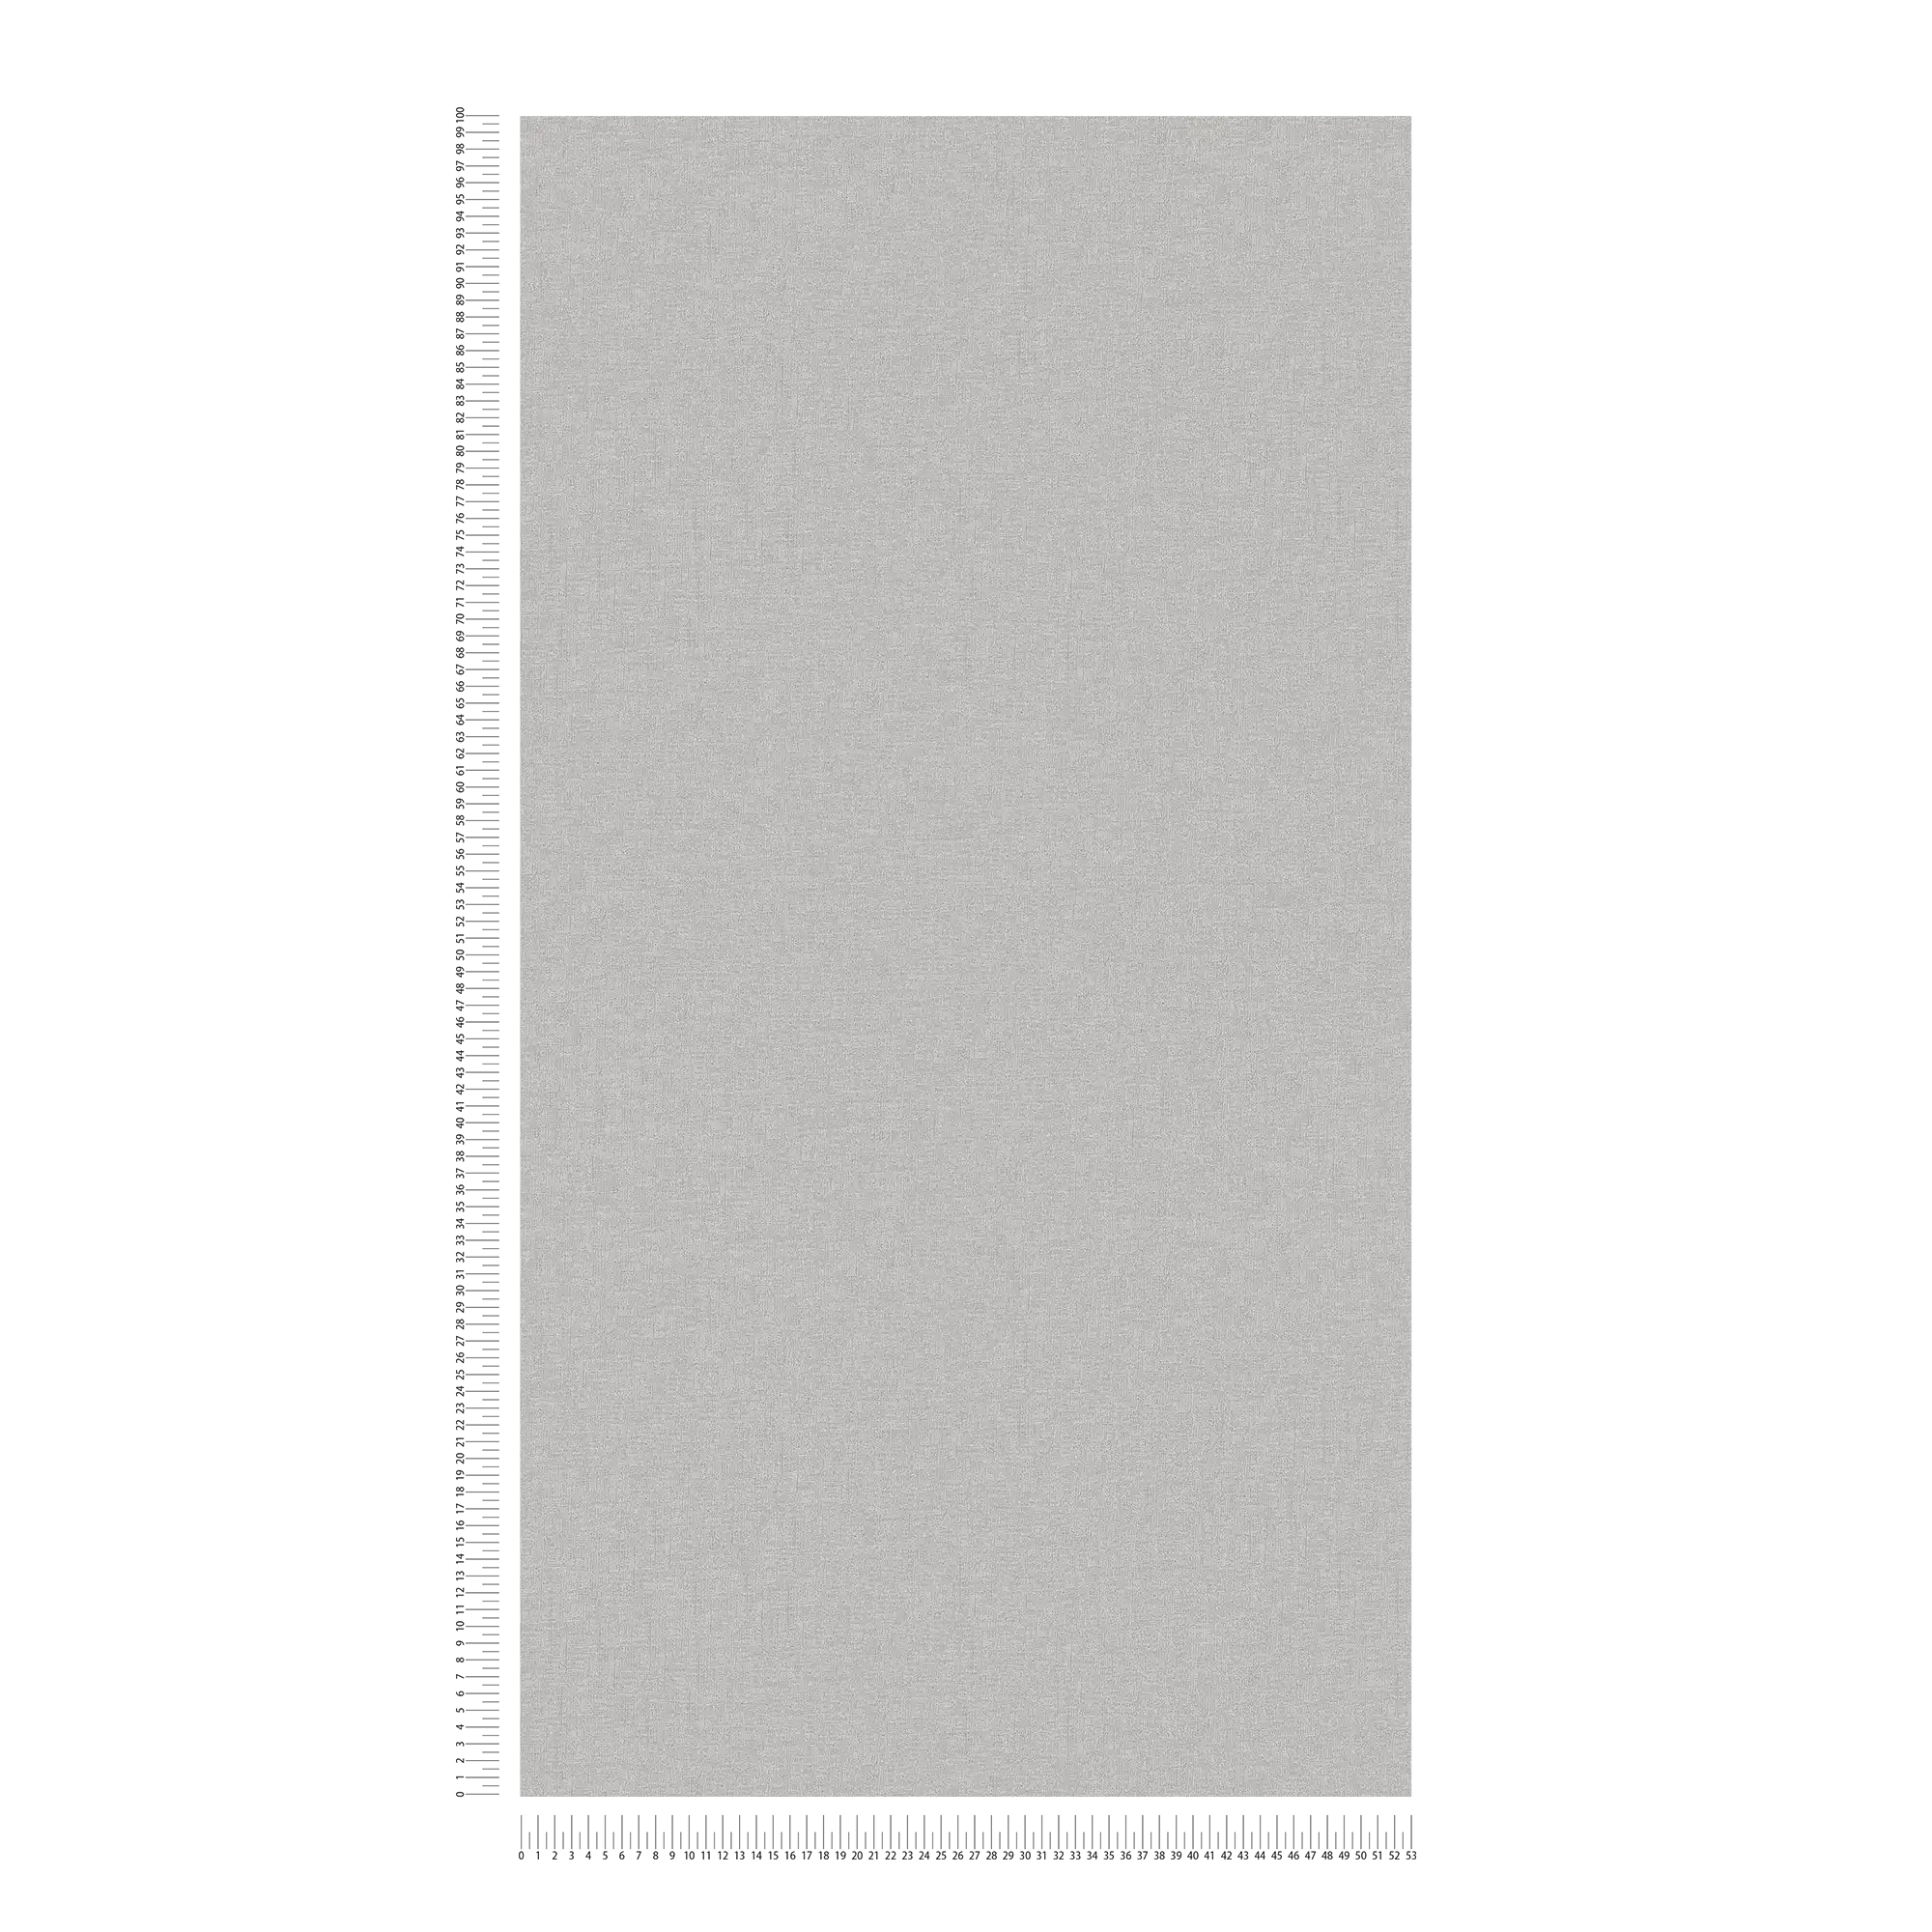             Carta da parati metallizzata argento lucido, liscia con struttura design
        